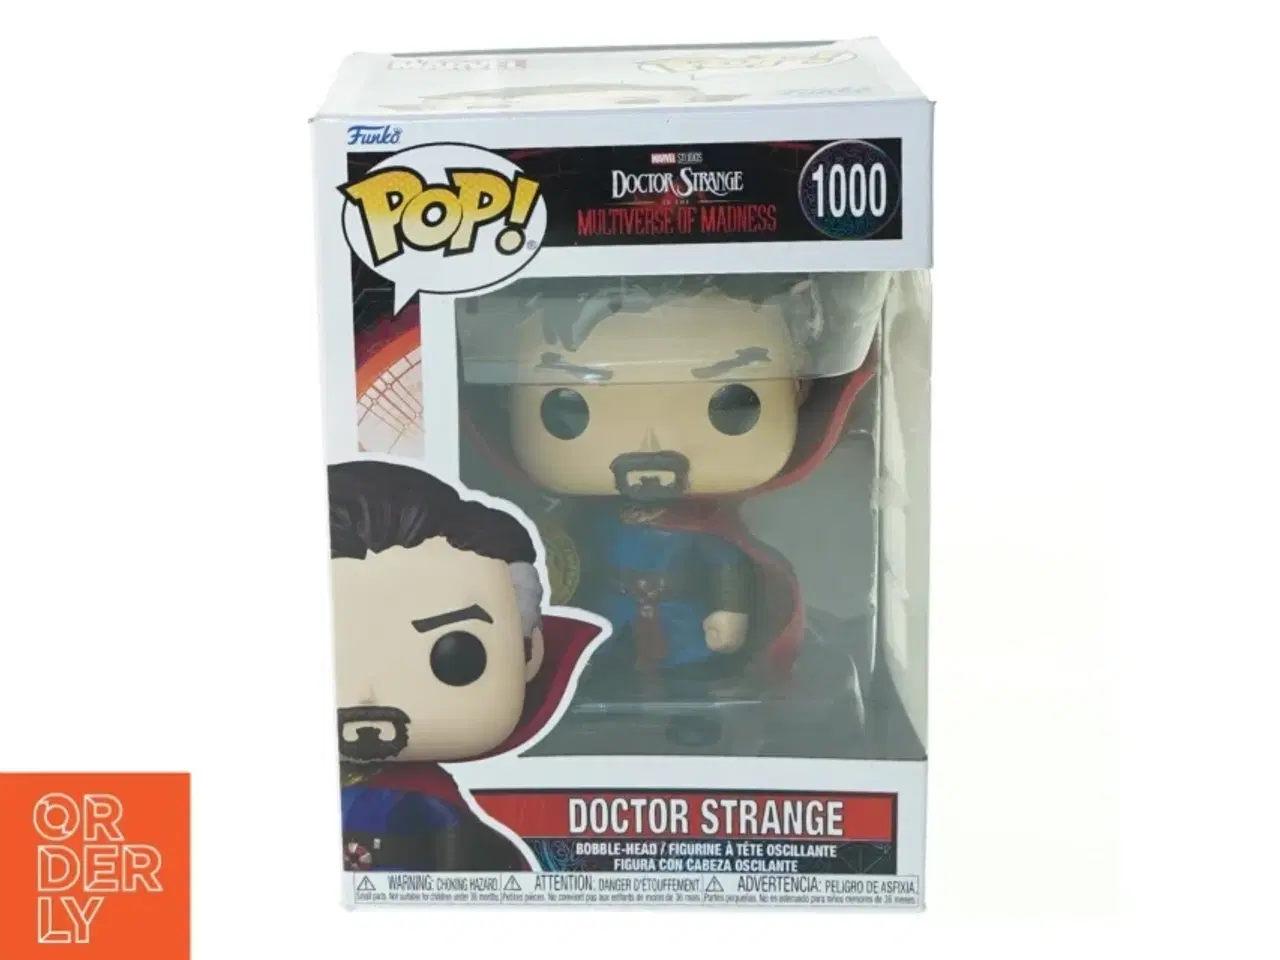 Billede 1 - Funko pop figur: Doctor Strange No 1000 fra Marvel (str. 11 x 16 cm)